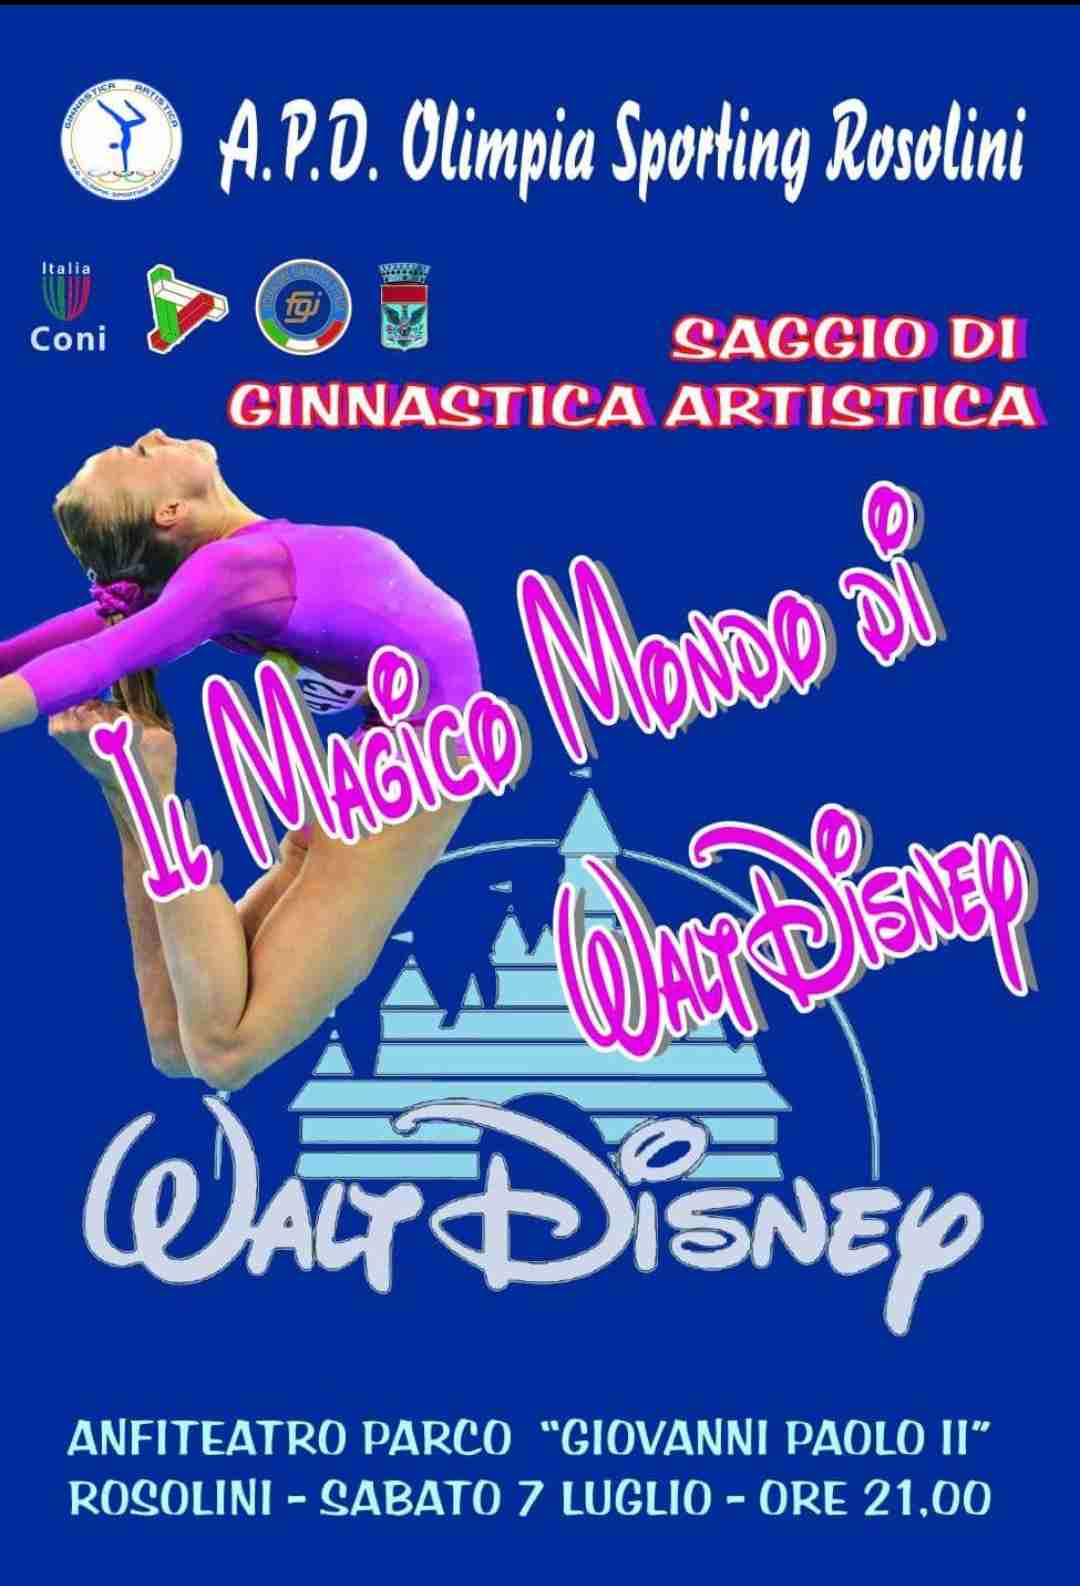 Stasera l’Olimpia Sporting Rosolini ci farà immergere nel “Magico mondo di Walt Disney”